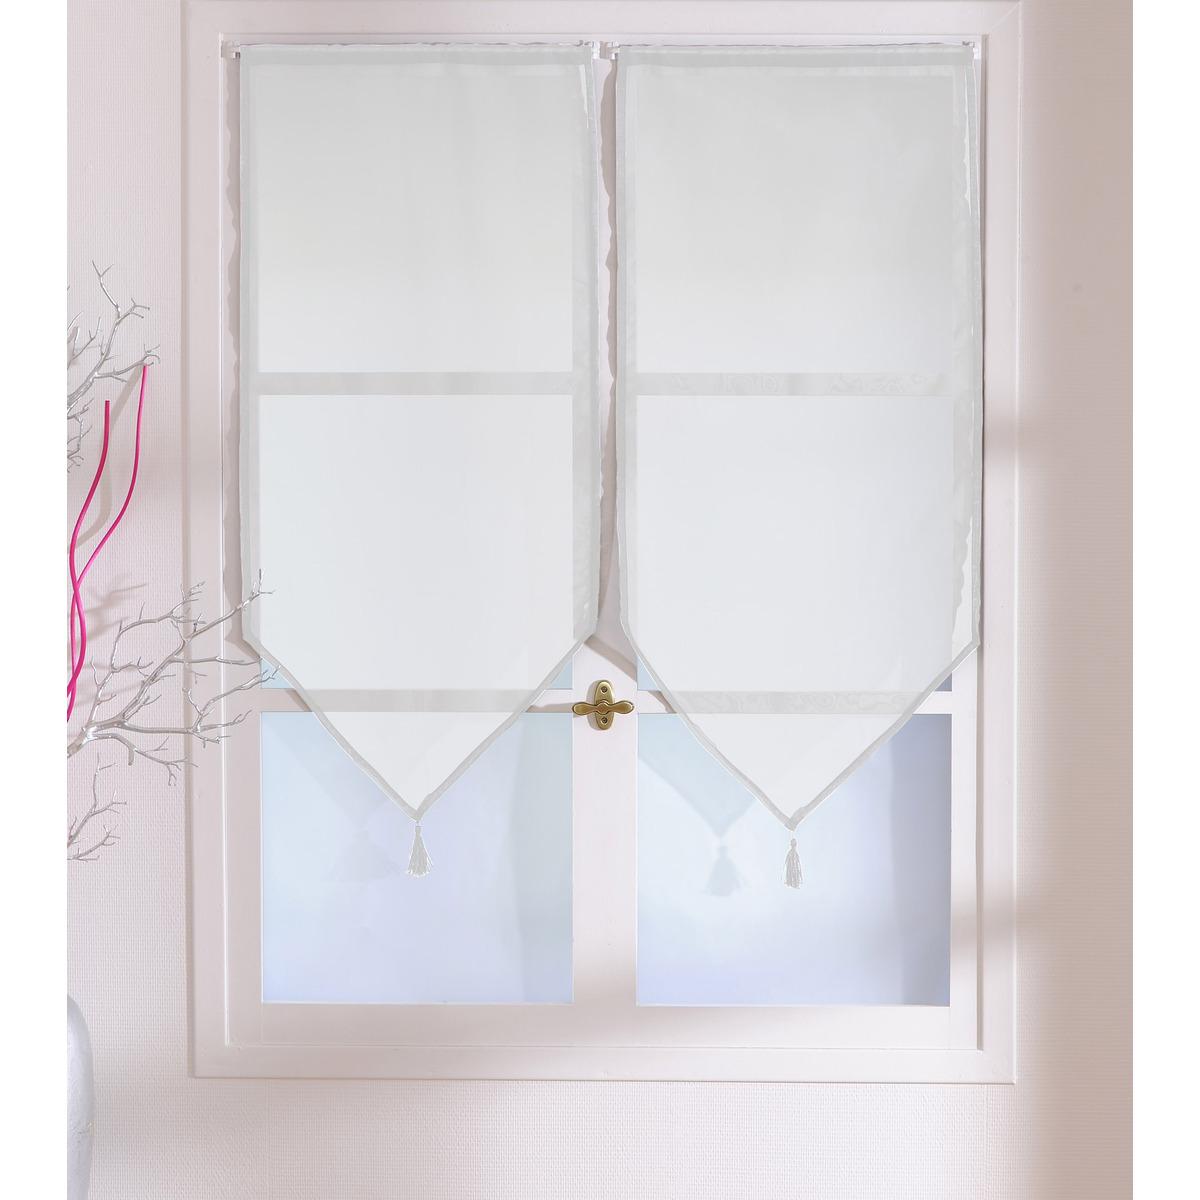 Paire de vitrages - 100% polyester - 60 x 90 cm - Blanc